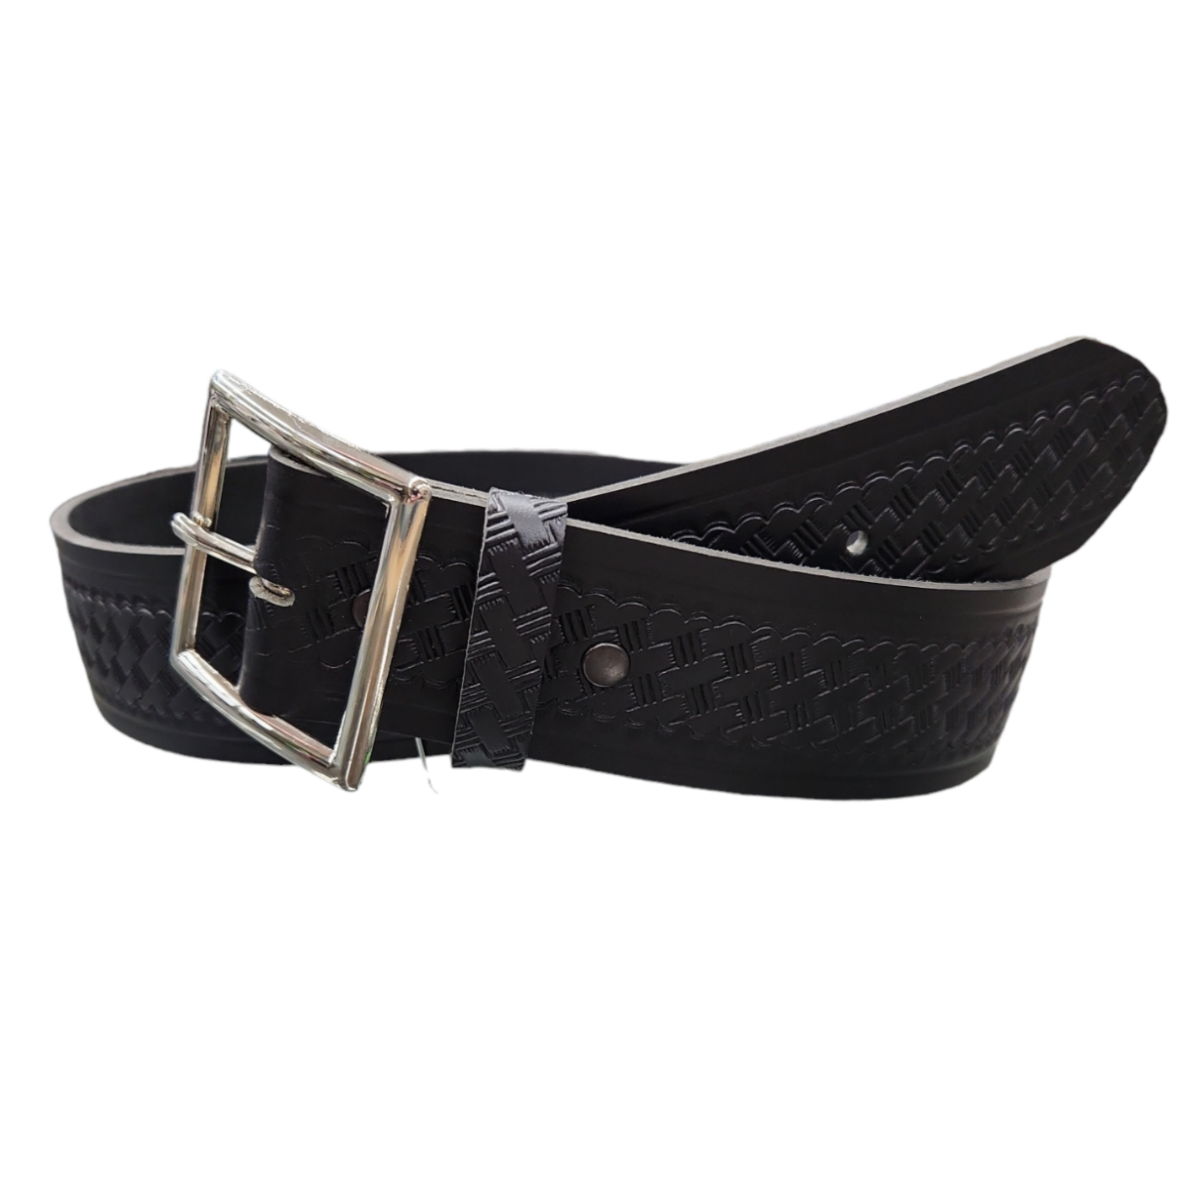 1 3/4" Basketweave Leather Belt